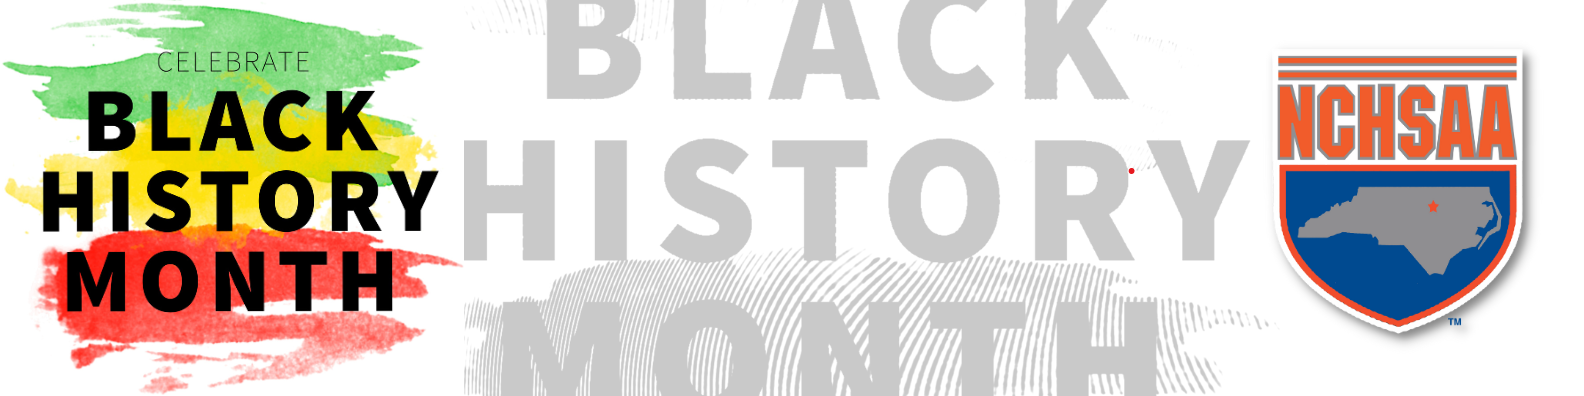 ASSOCIATION SPOTLIGHT: BLACK HISTORY MONTH Commissioner Que Tucker